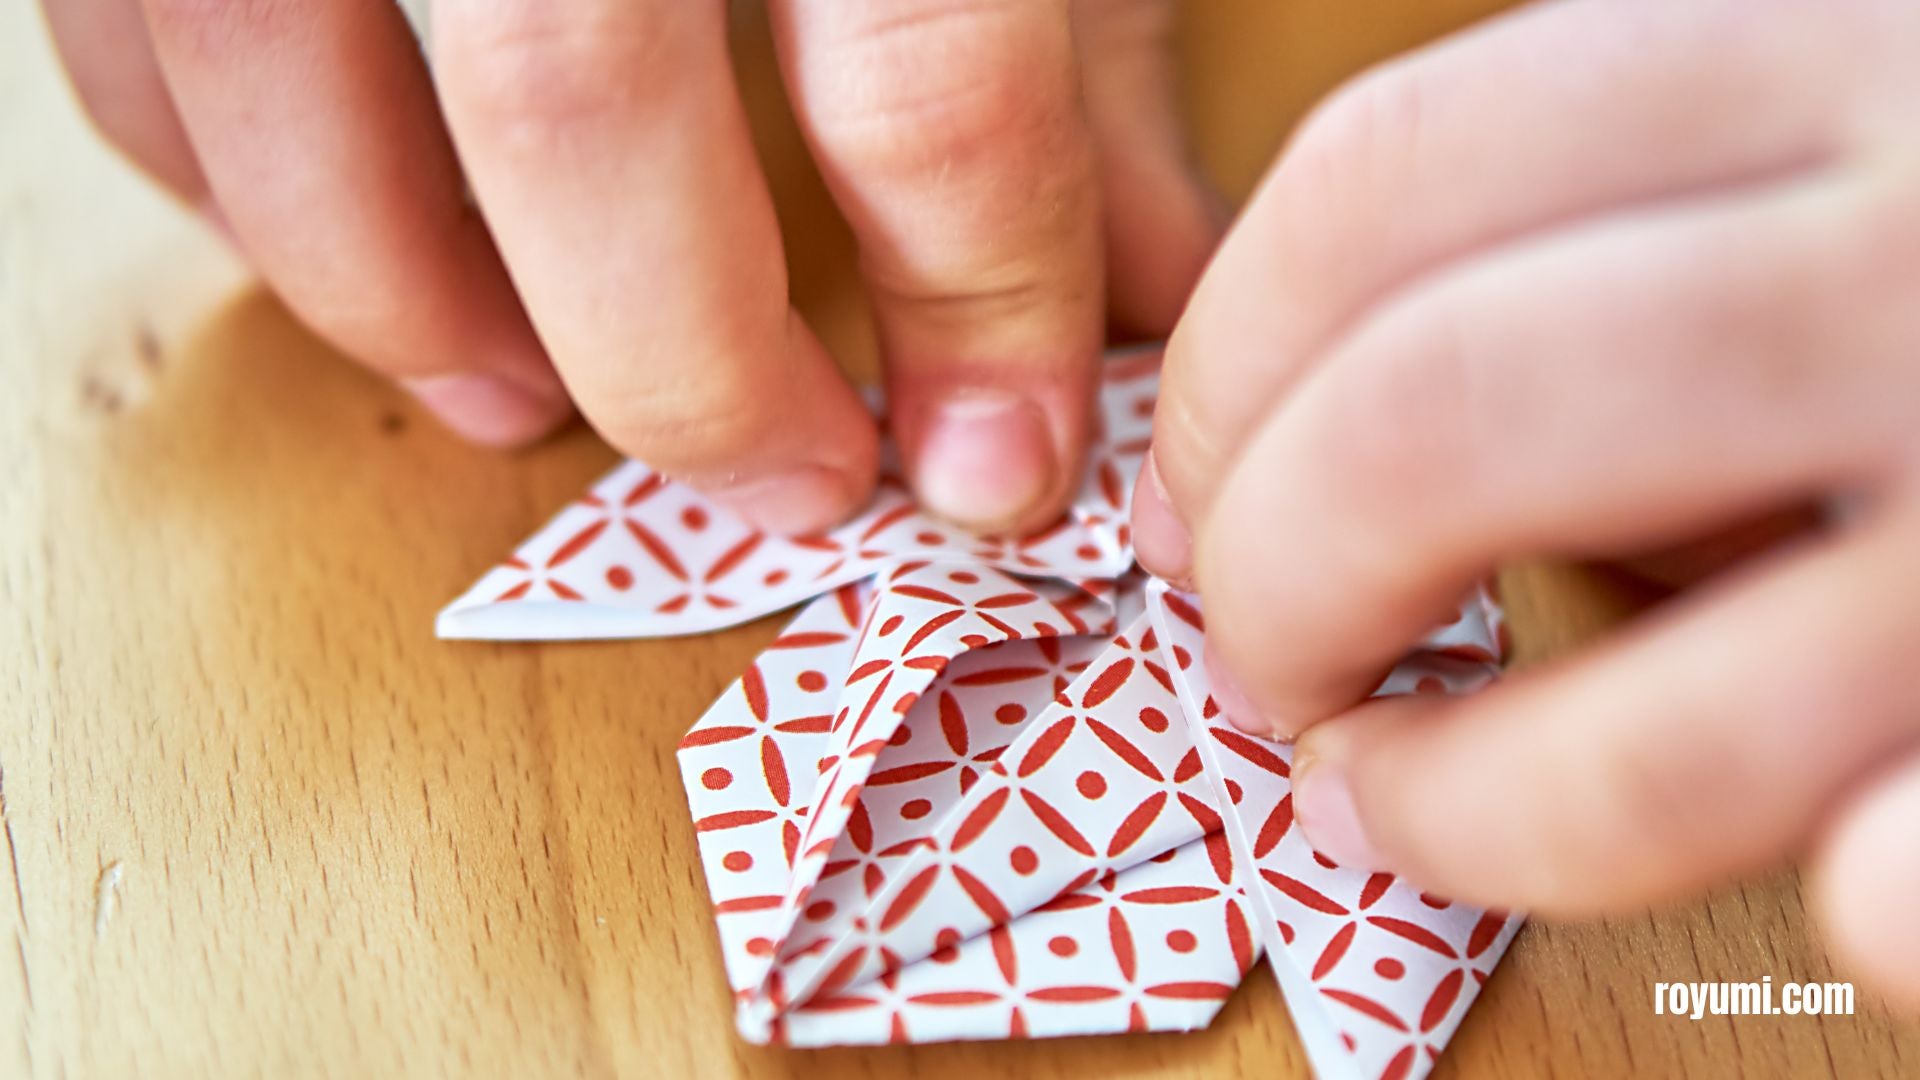 El Arte Transformador del Origami: Potenciando Nuestro Cerebro